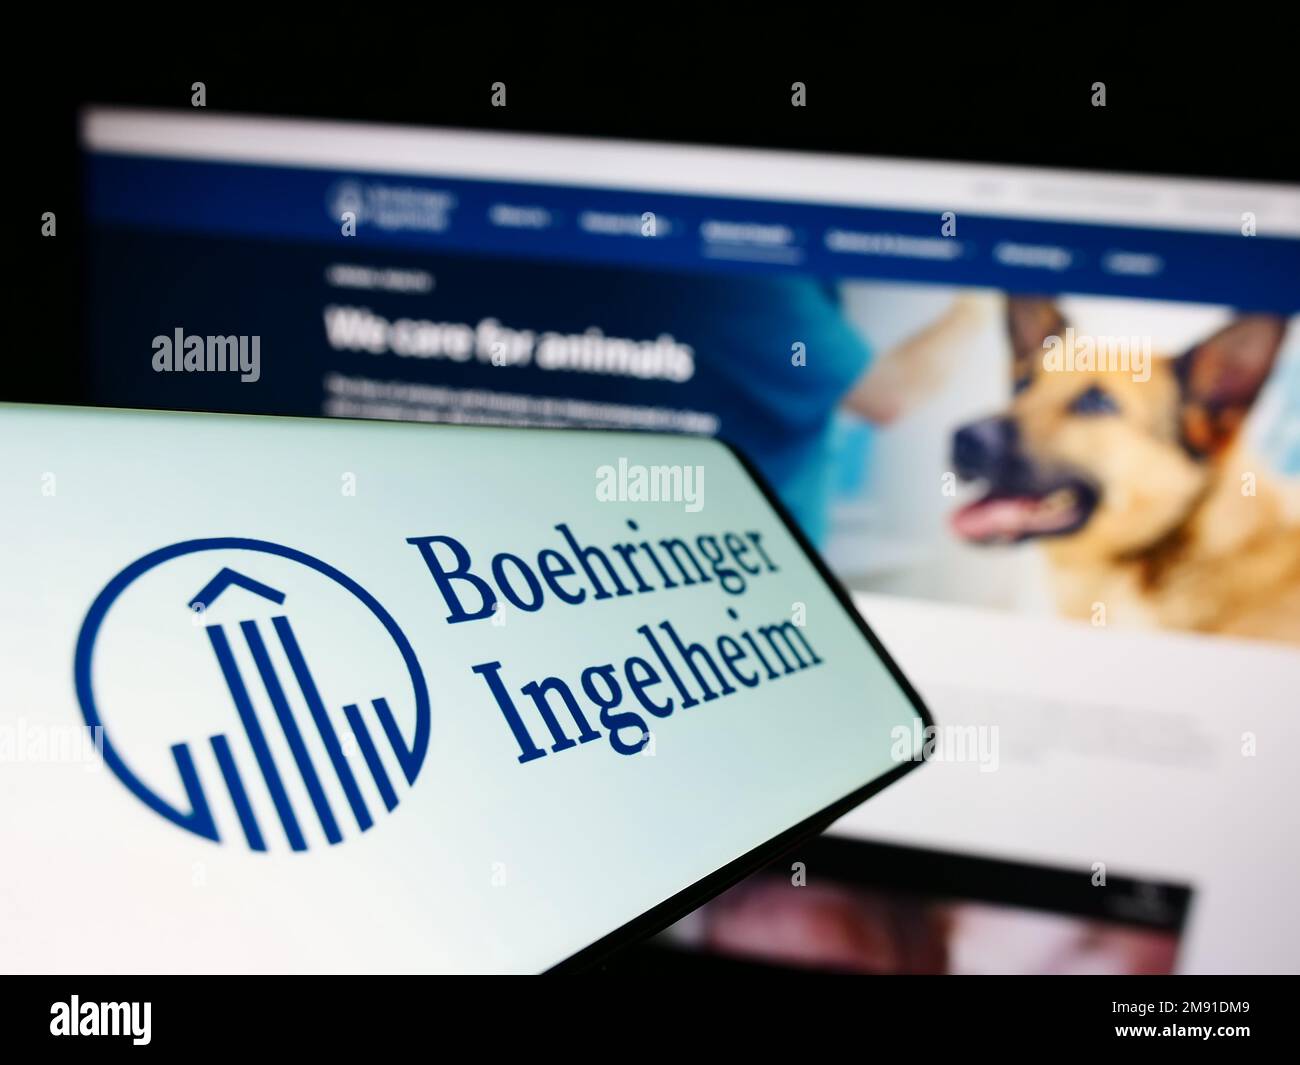 Cellulare con logo della società farmaceutica Boehringer Ingelheim sullo schermo di fronte al sito web aziendale. Messa a fuoco al centro a sinistra del display del telefono. Foto Stock